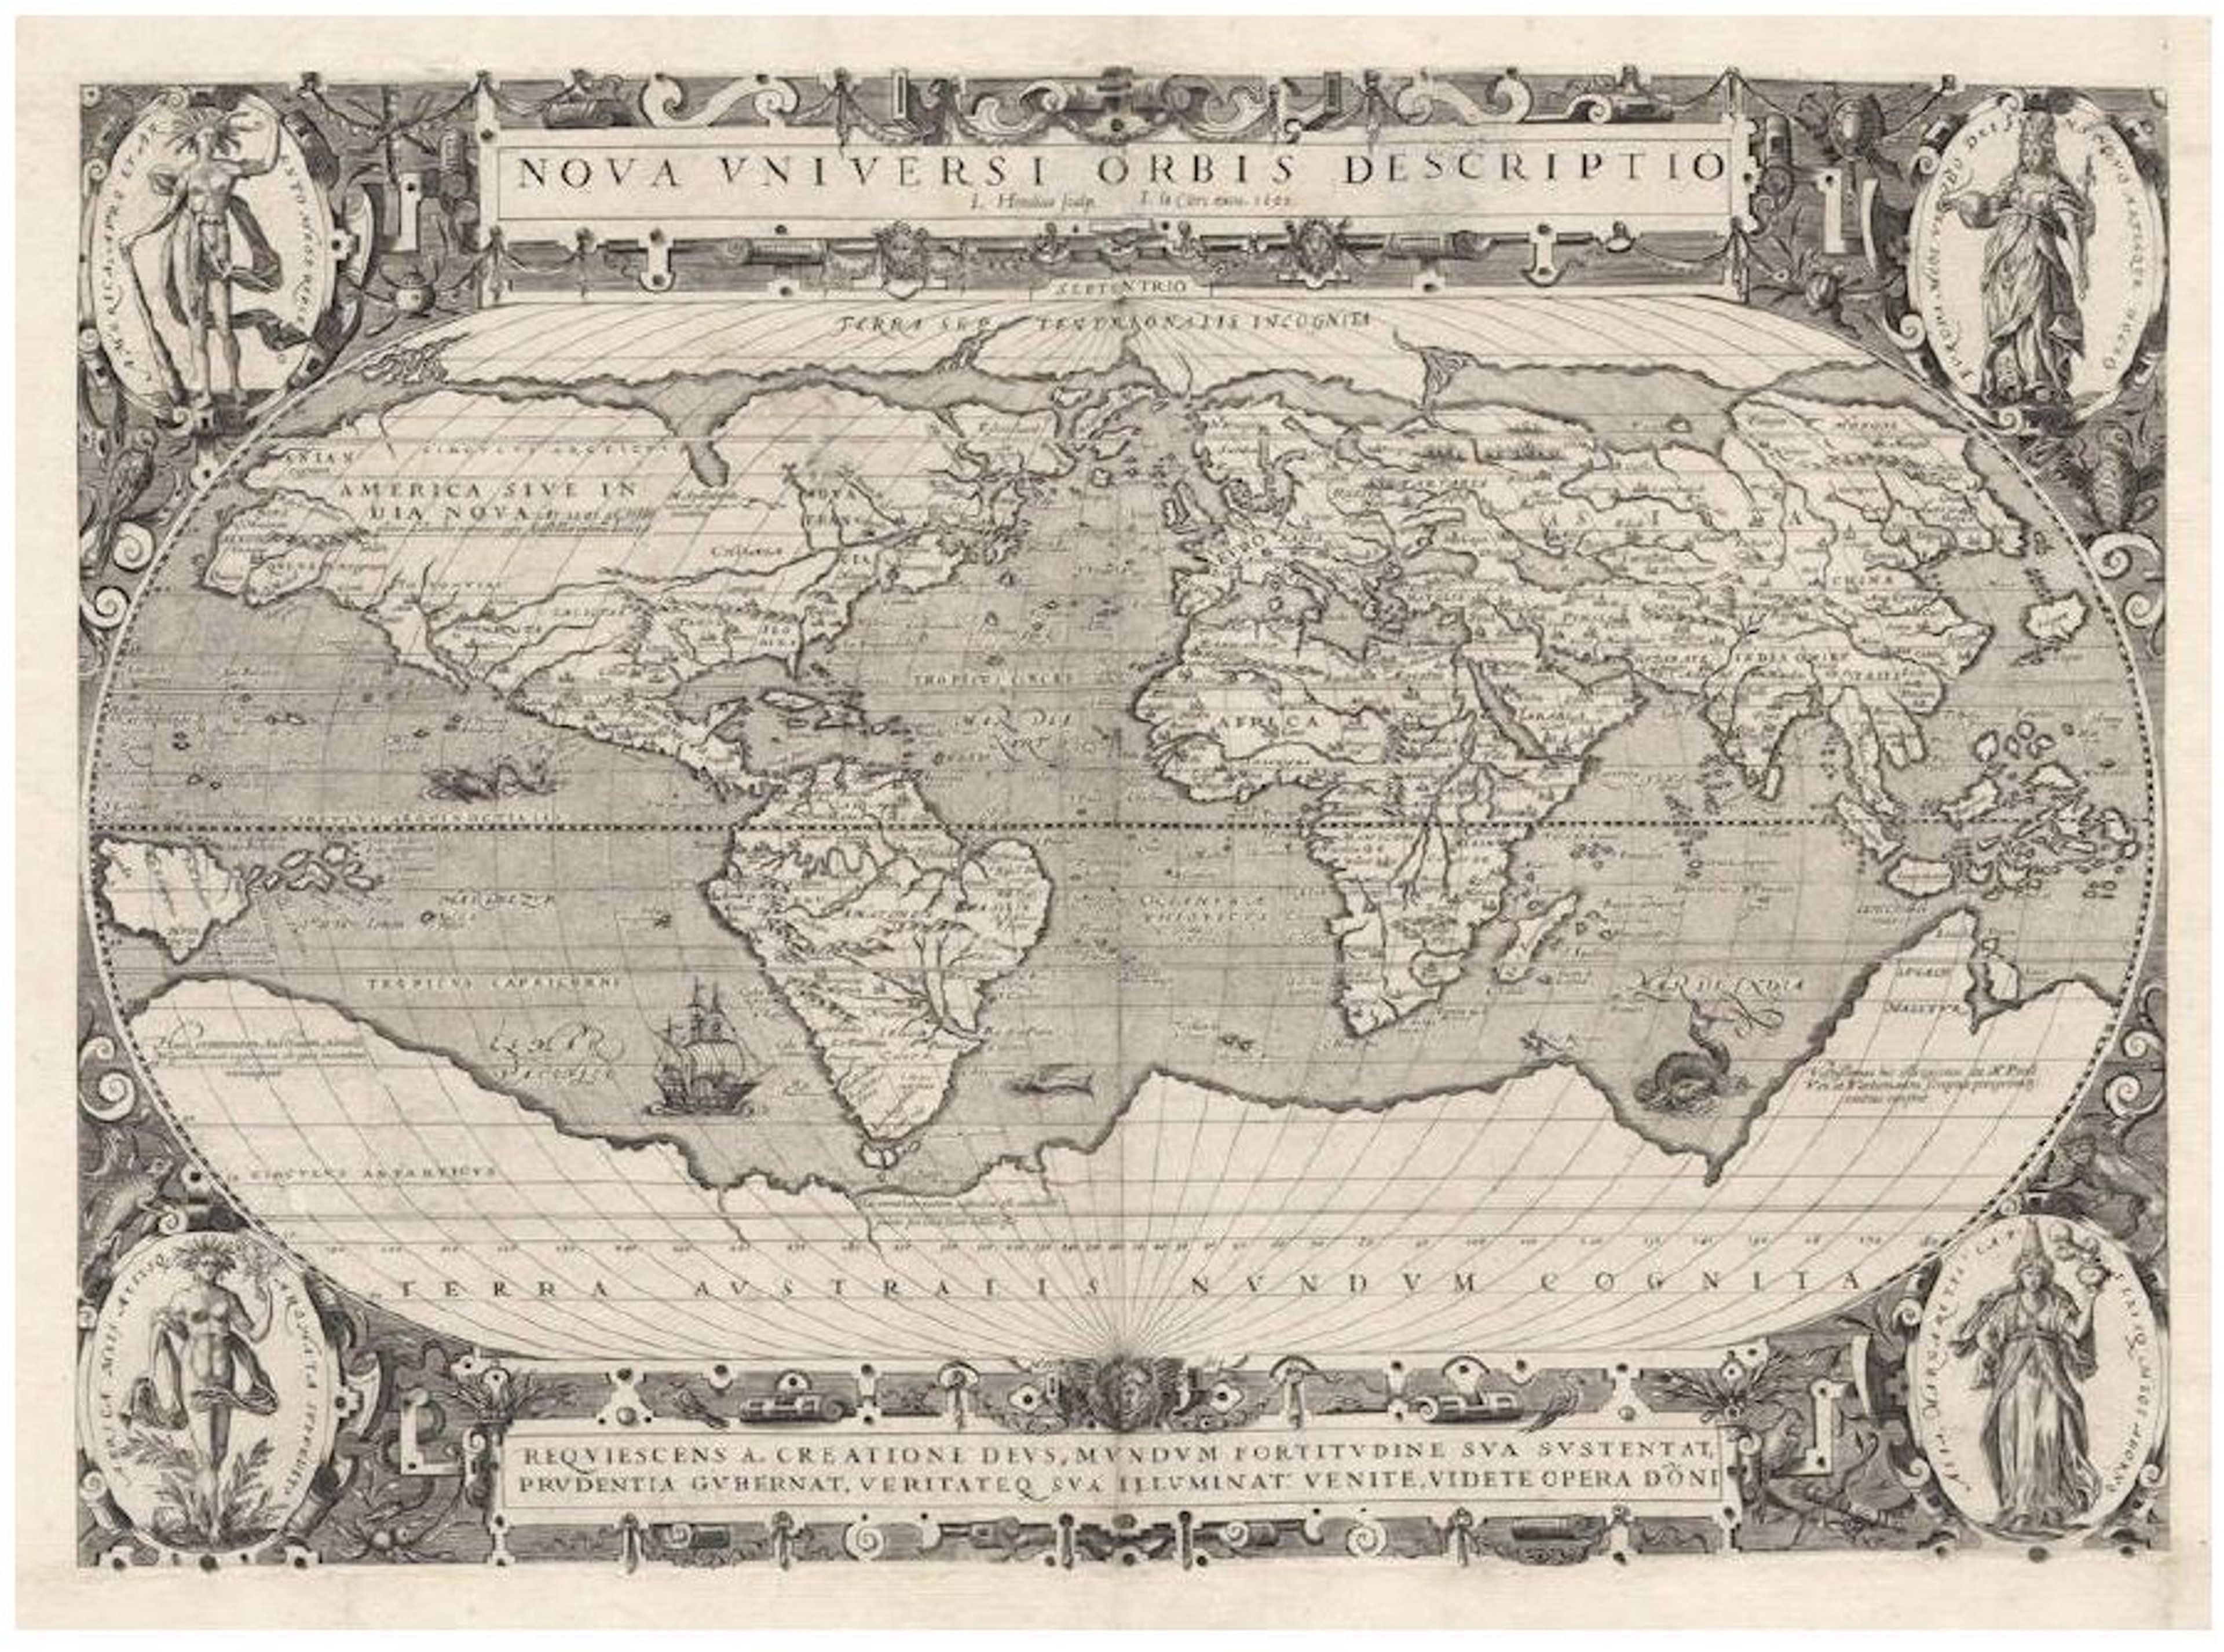 Jodocus Hondius/Jean Le Clerc, Orbis Terrae Novissima Descriptio Authore Gerado Mercatore, 1602